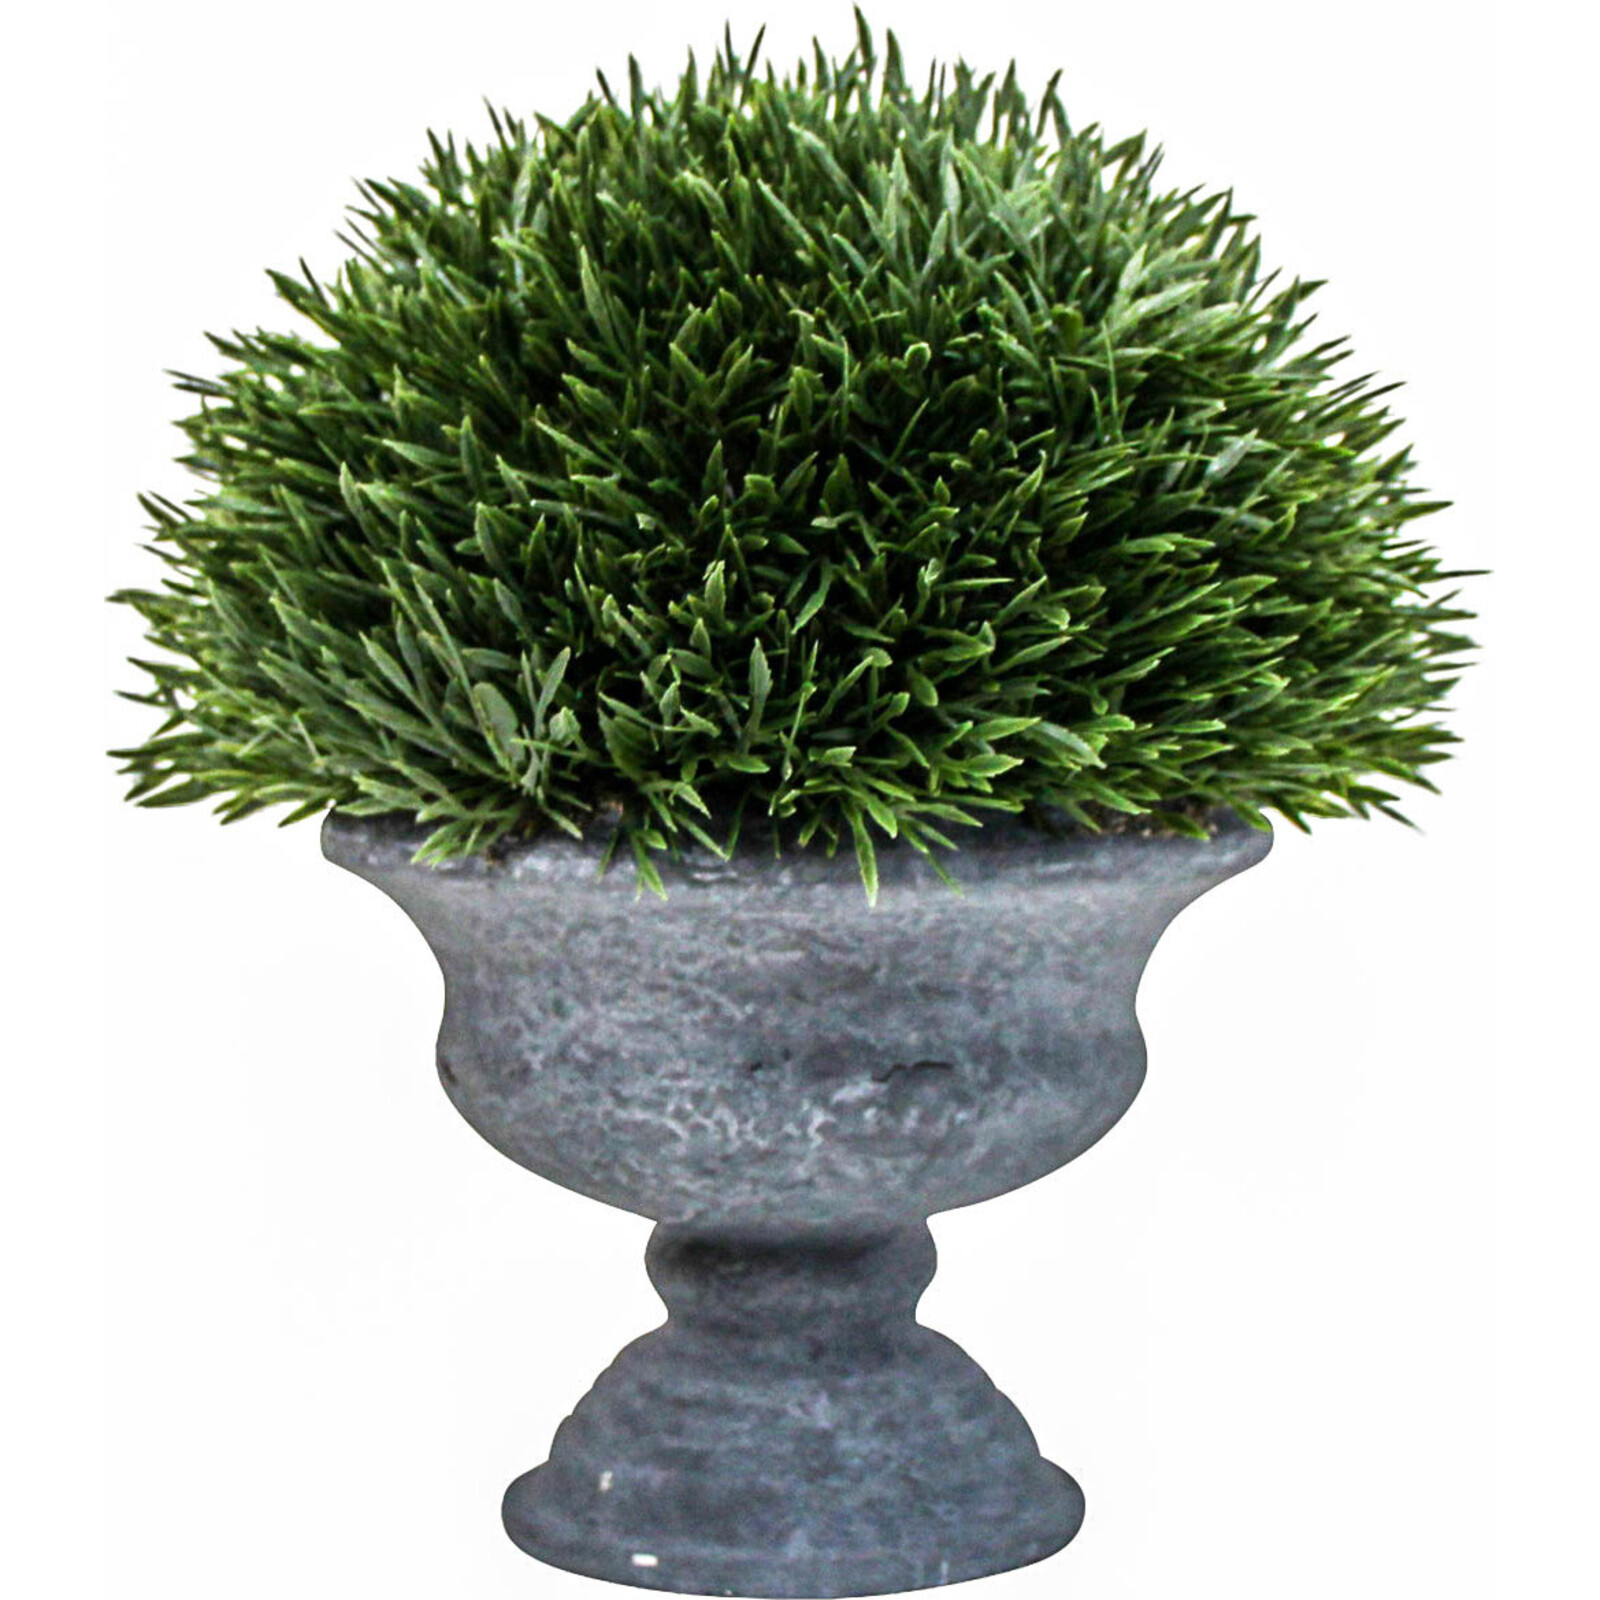 Spiky Grass Urn